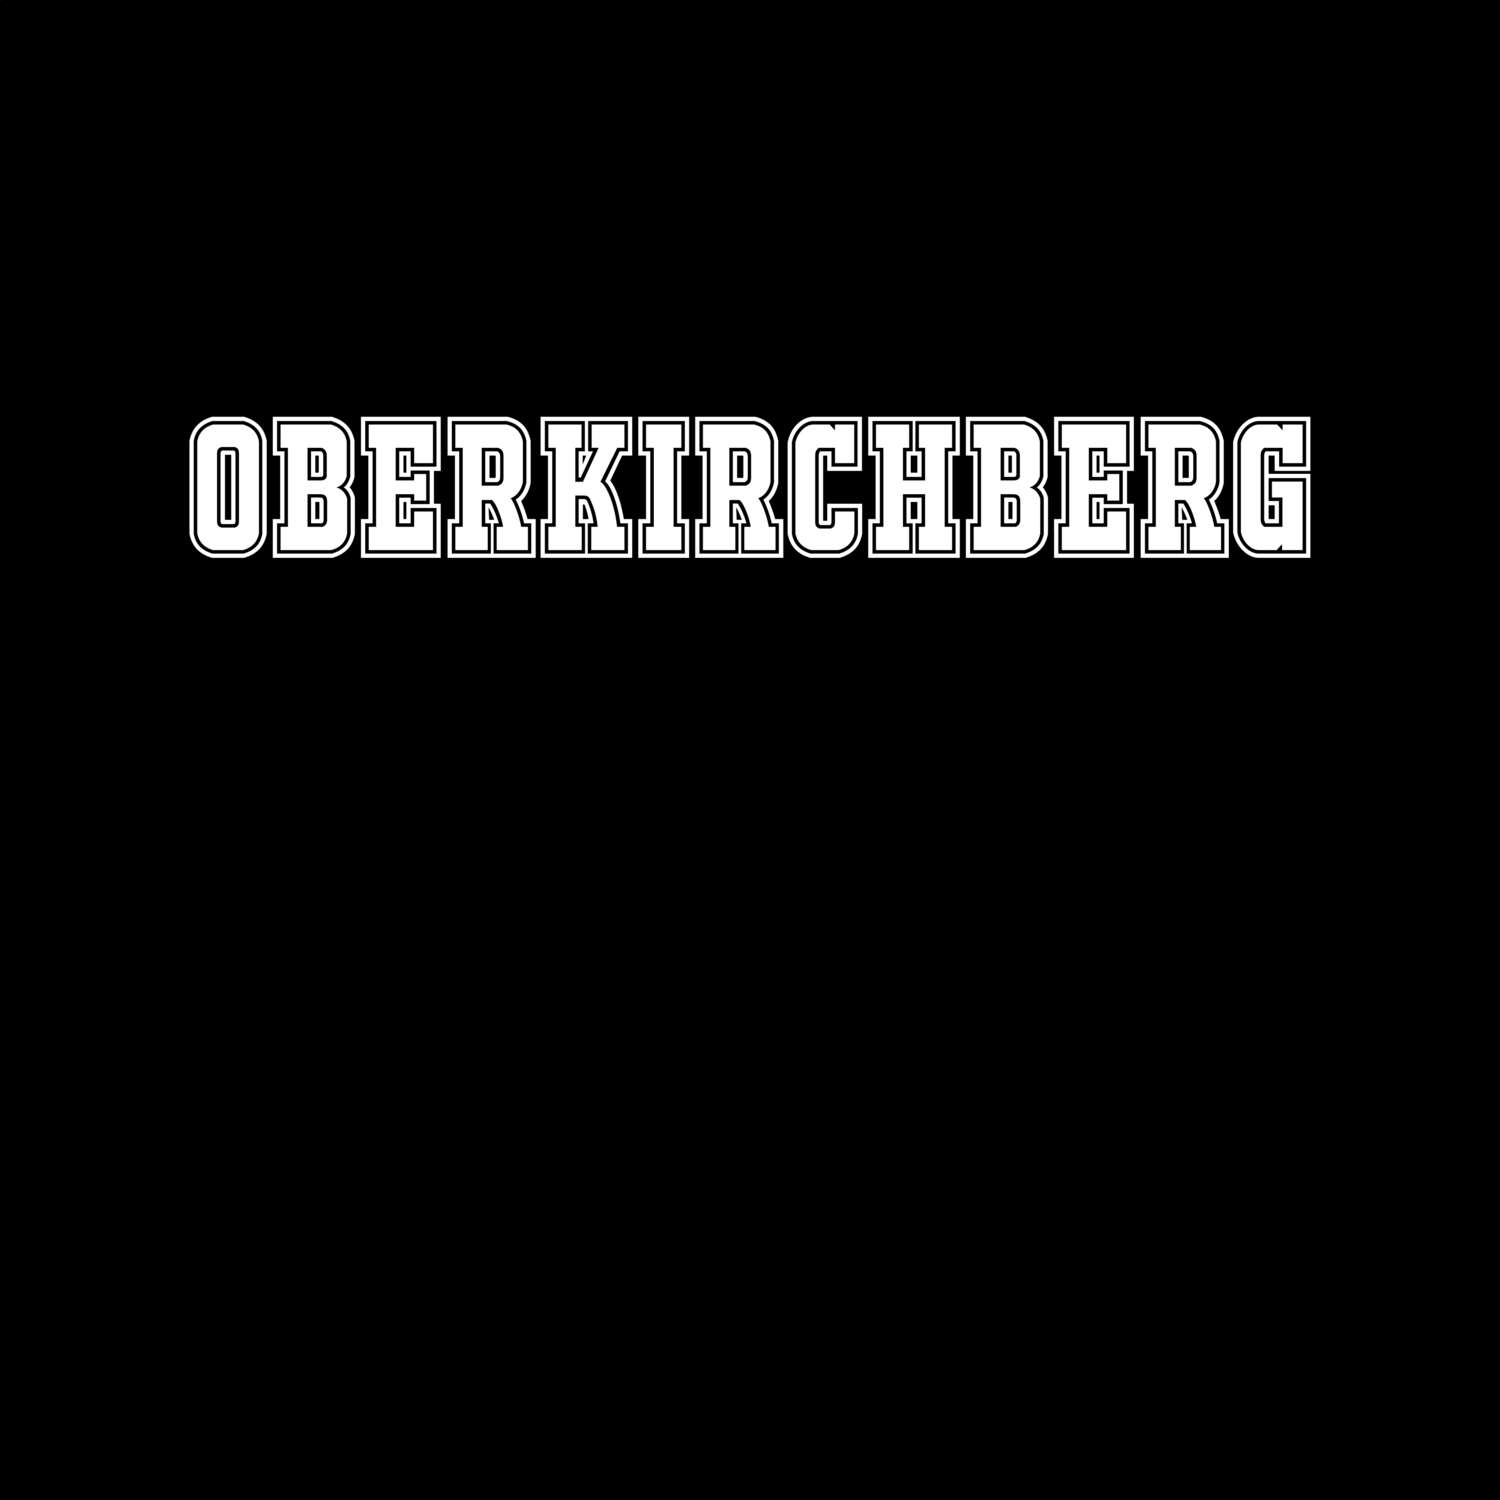 Oberkirchberg T-Shirt »Classic«